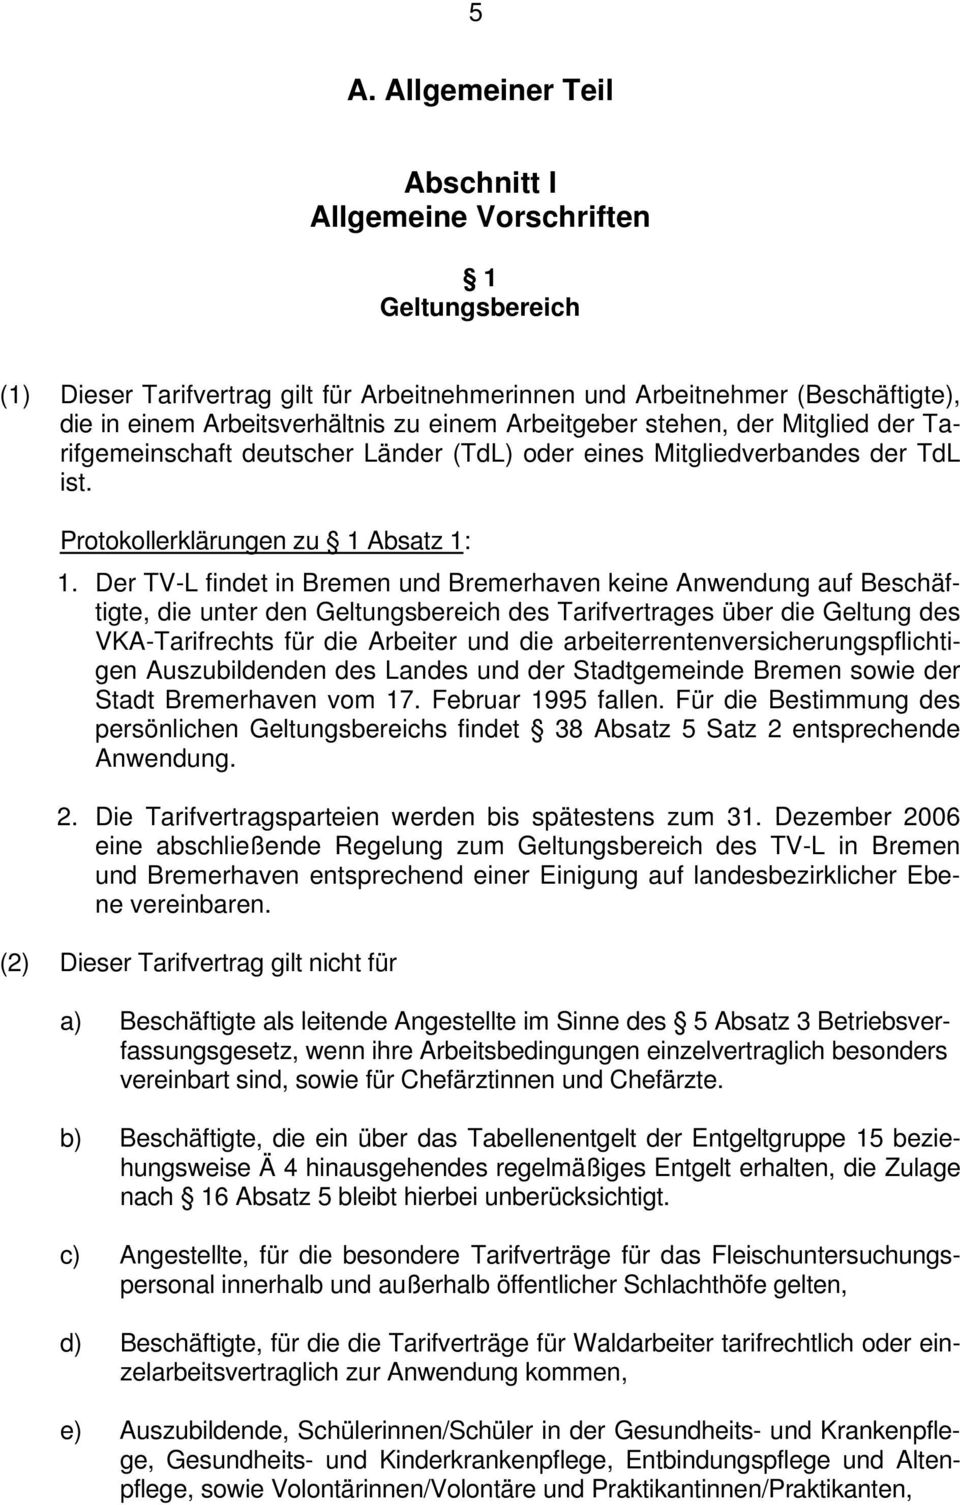 Der TV-L findet in Bremen und Bremerhaven keine Anwendung auf Beschäftigte, die unter den Geltungsbereich des Tarifvertrages über die Geltung des VKA-Tarifrechts für die Arbeiter und die